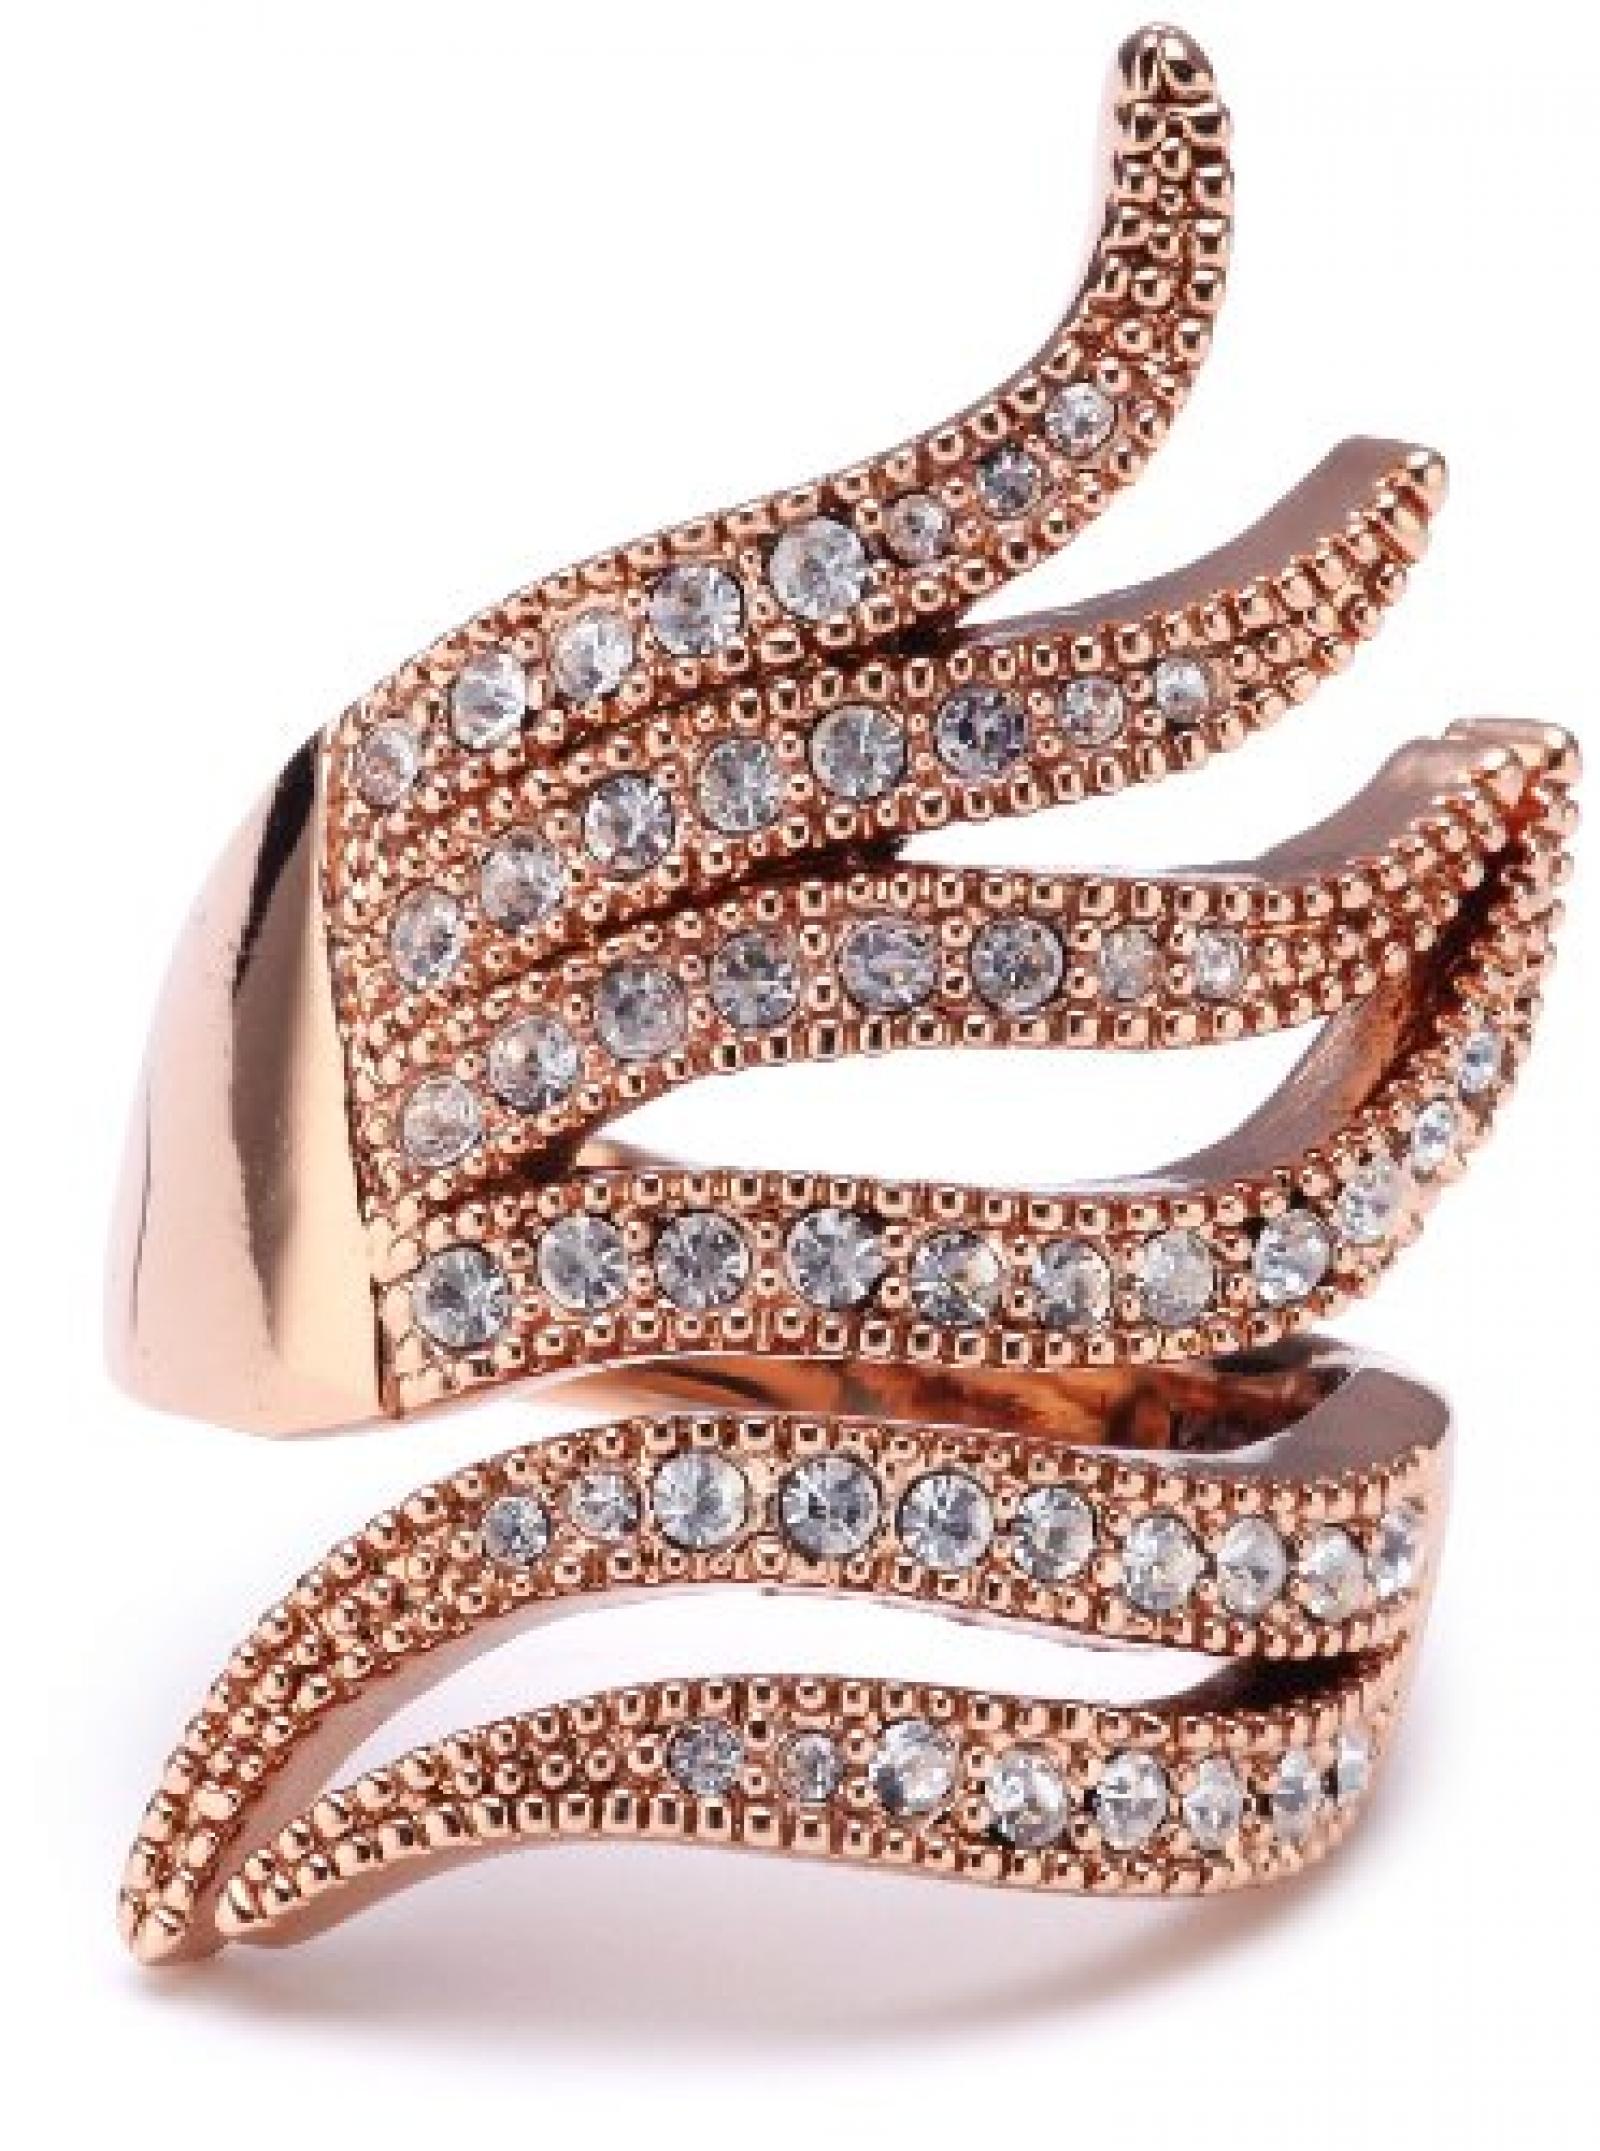 Pilgrim Jewelry Damen-Ring aus der Serie Ringe roségold beschichtet weiß 3.1 cm verstellbar Gr. 51-59 271314024 